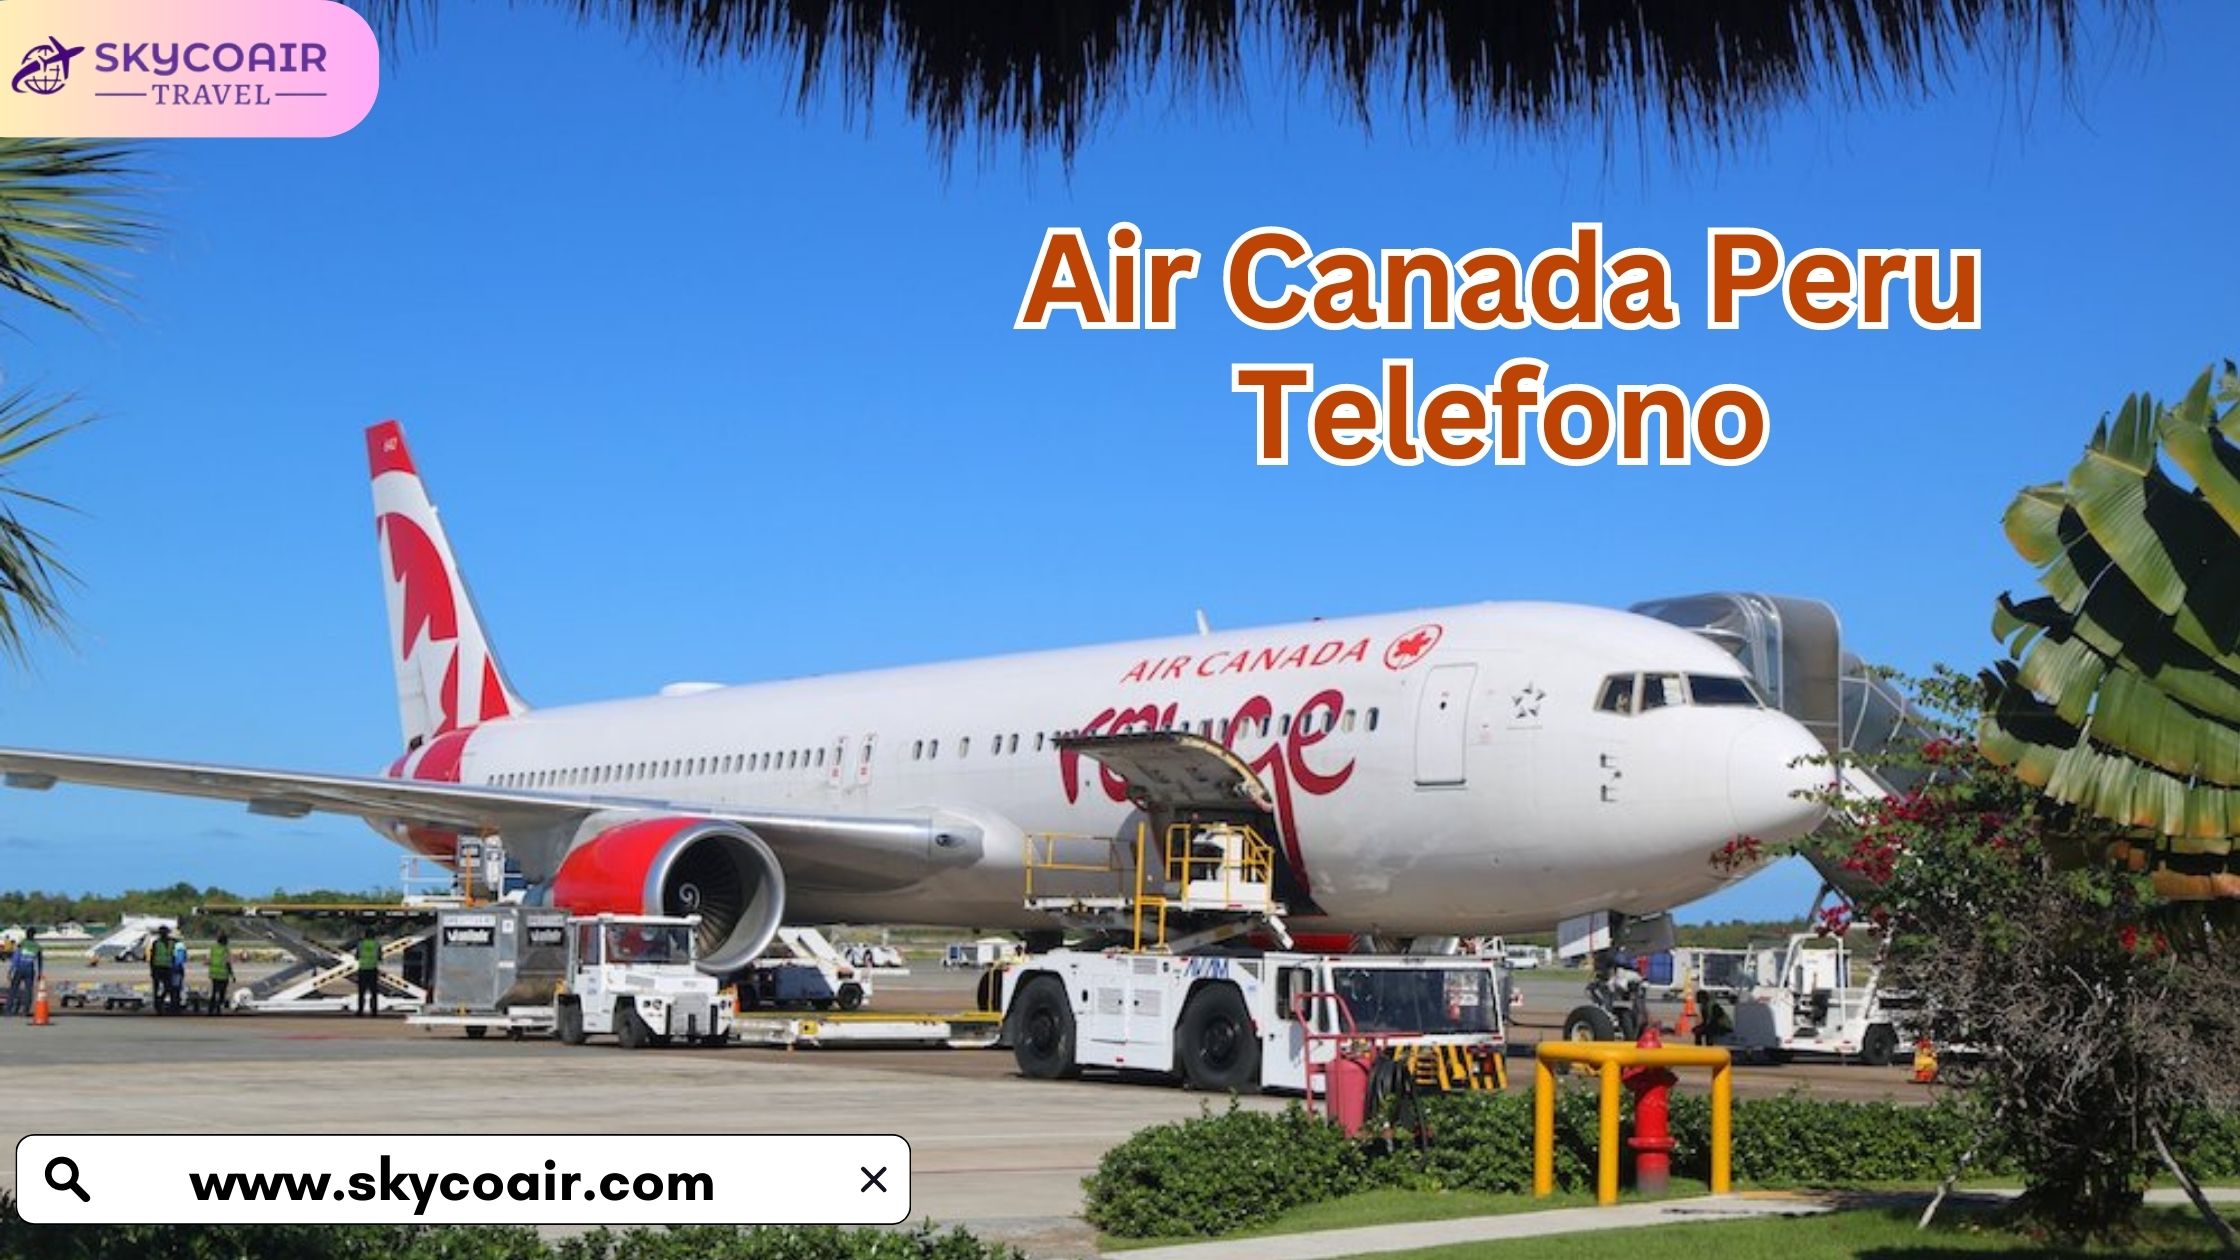 Air Canada Peru Telefono